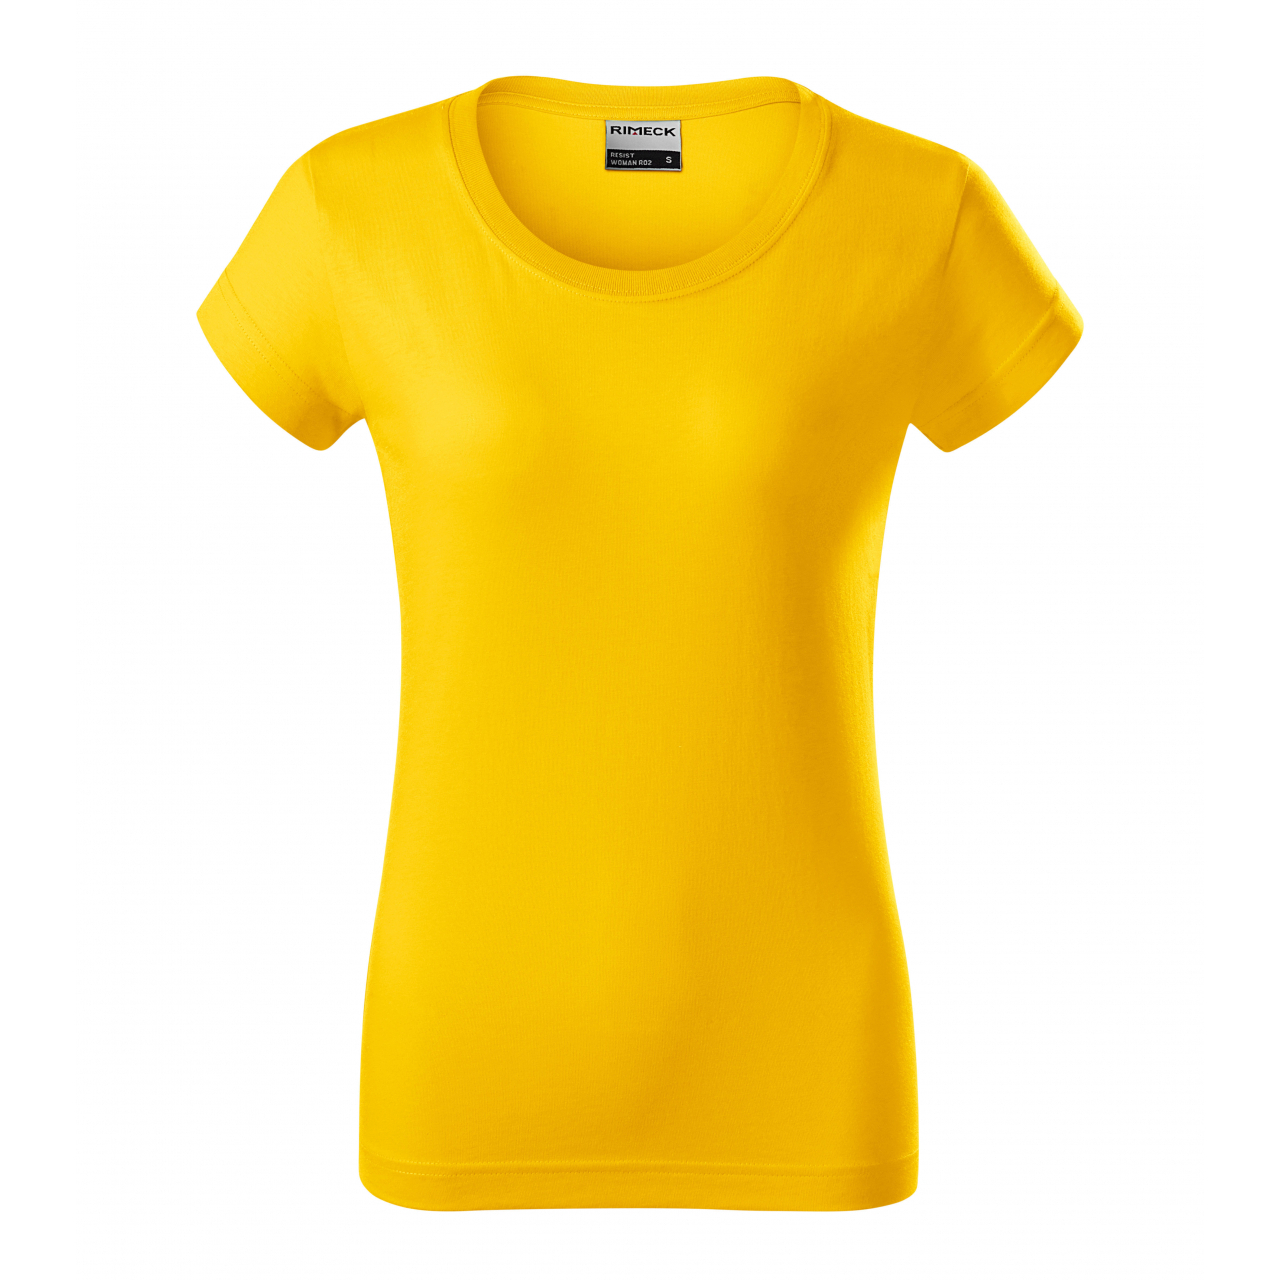 Tričko dámské Rimeck Resist - žluté, XL